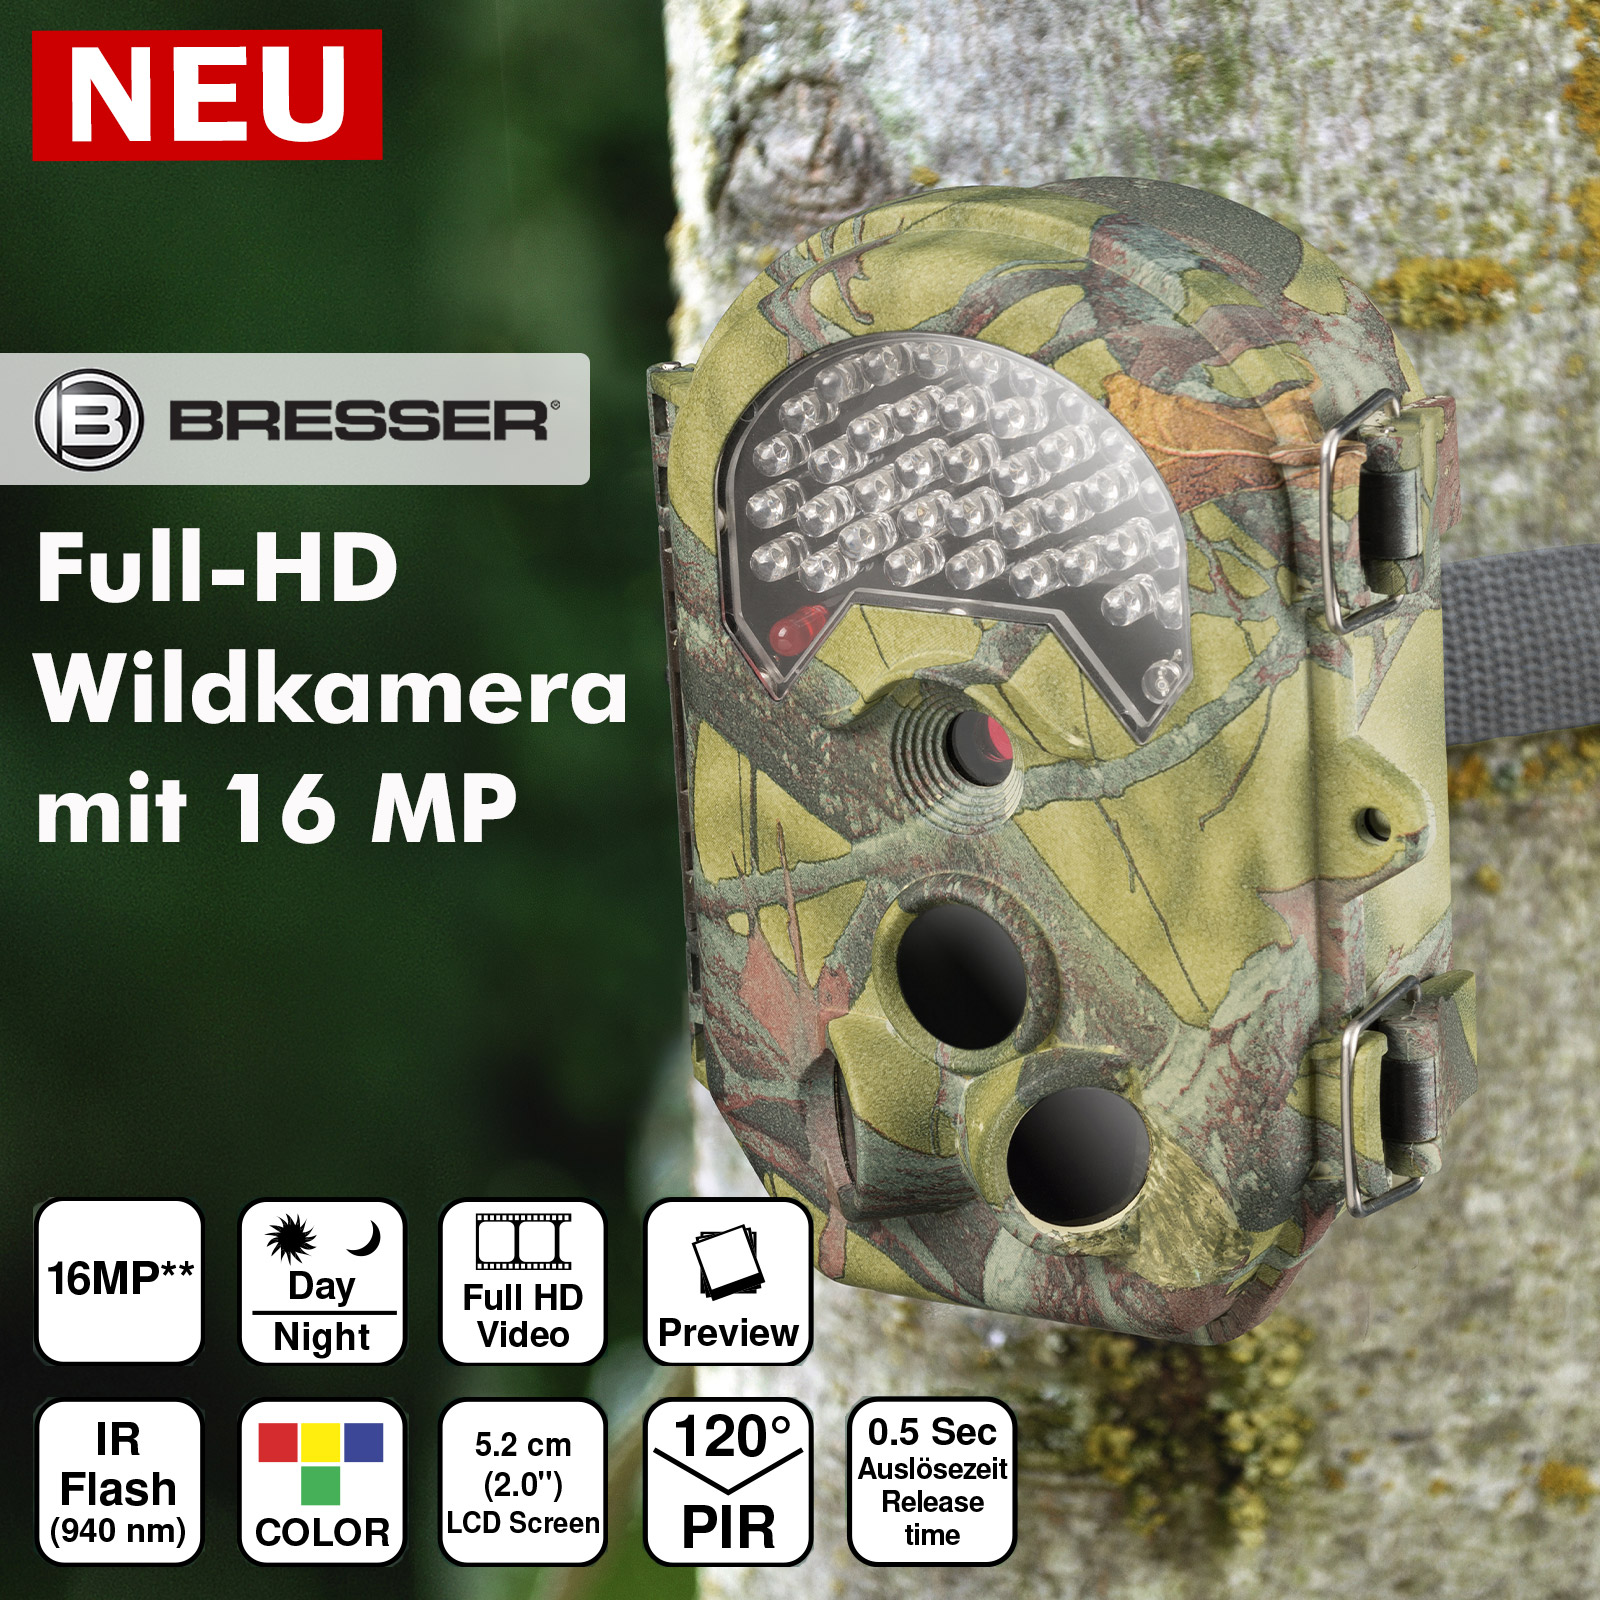 BRESSER Full-HD Wildkamera - AKAH - Albrecht Kind GmbH